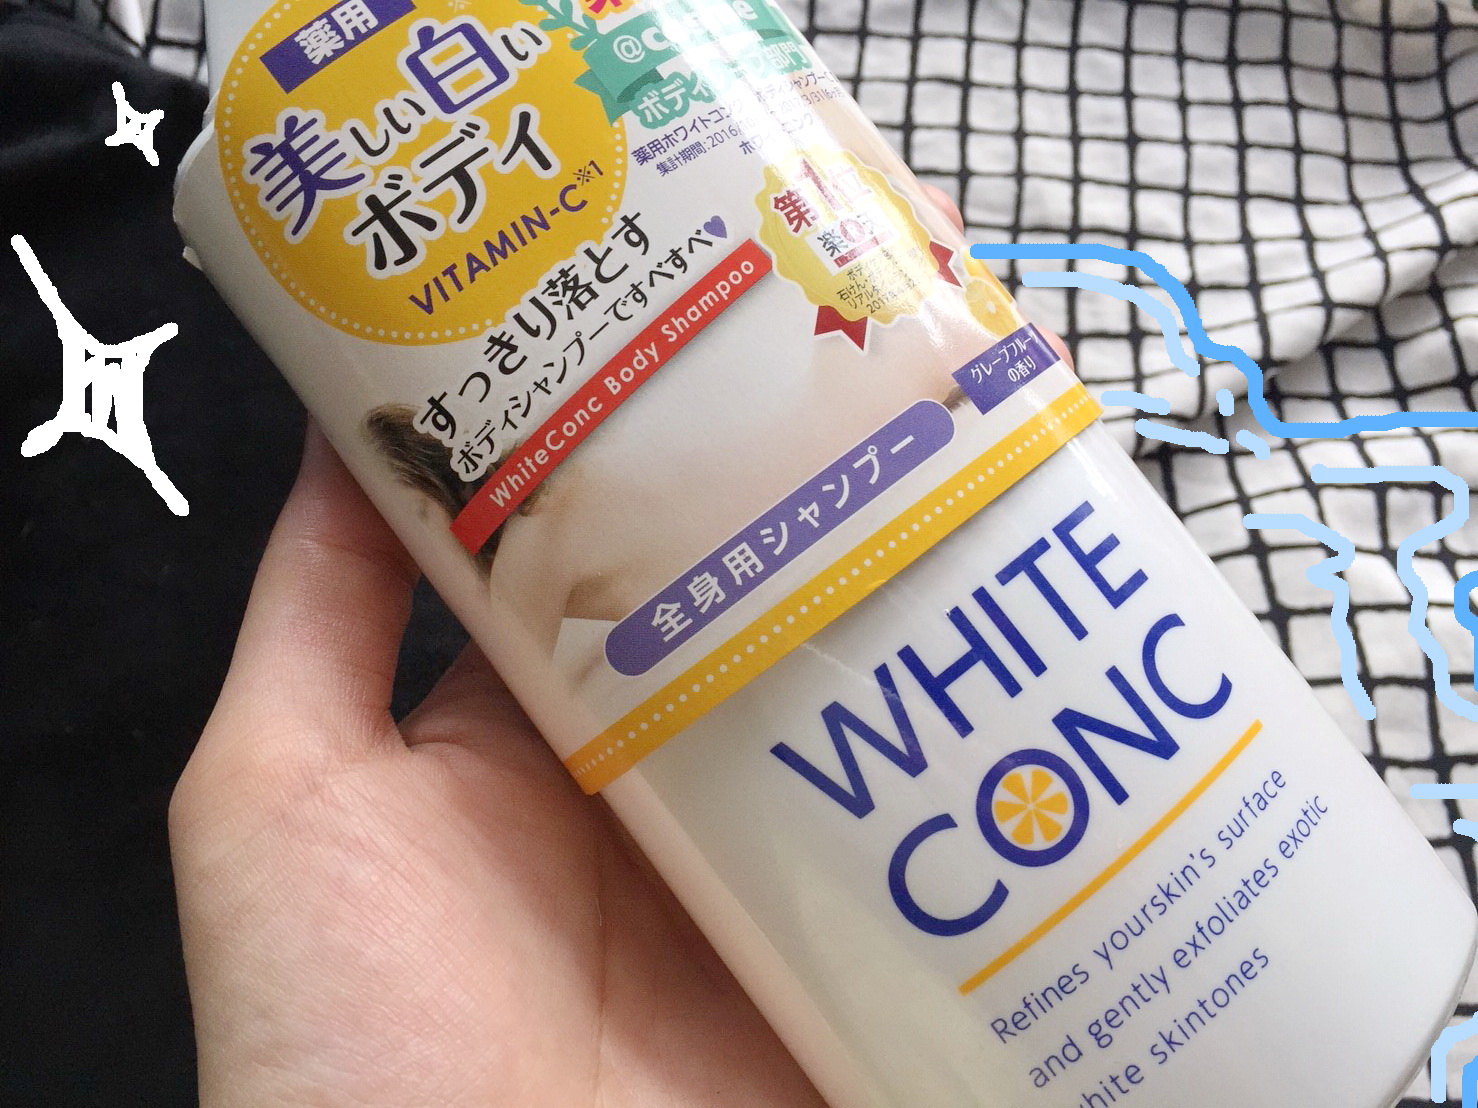 รีวิว ผิวขาวใส กับ White Conc Body Shampoo สบู่เหลวสัญชาติญี่ปุ่น - Pantip